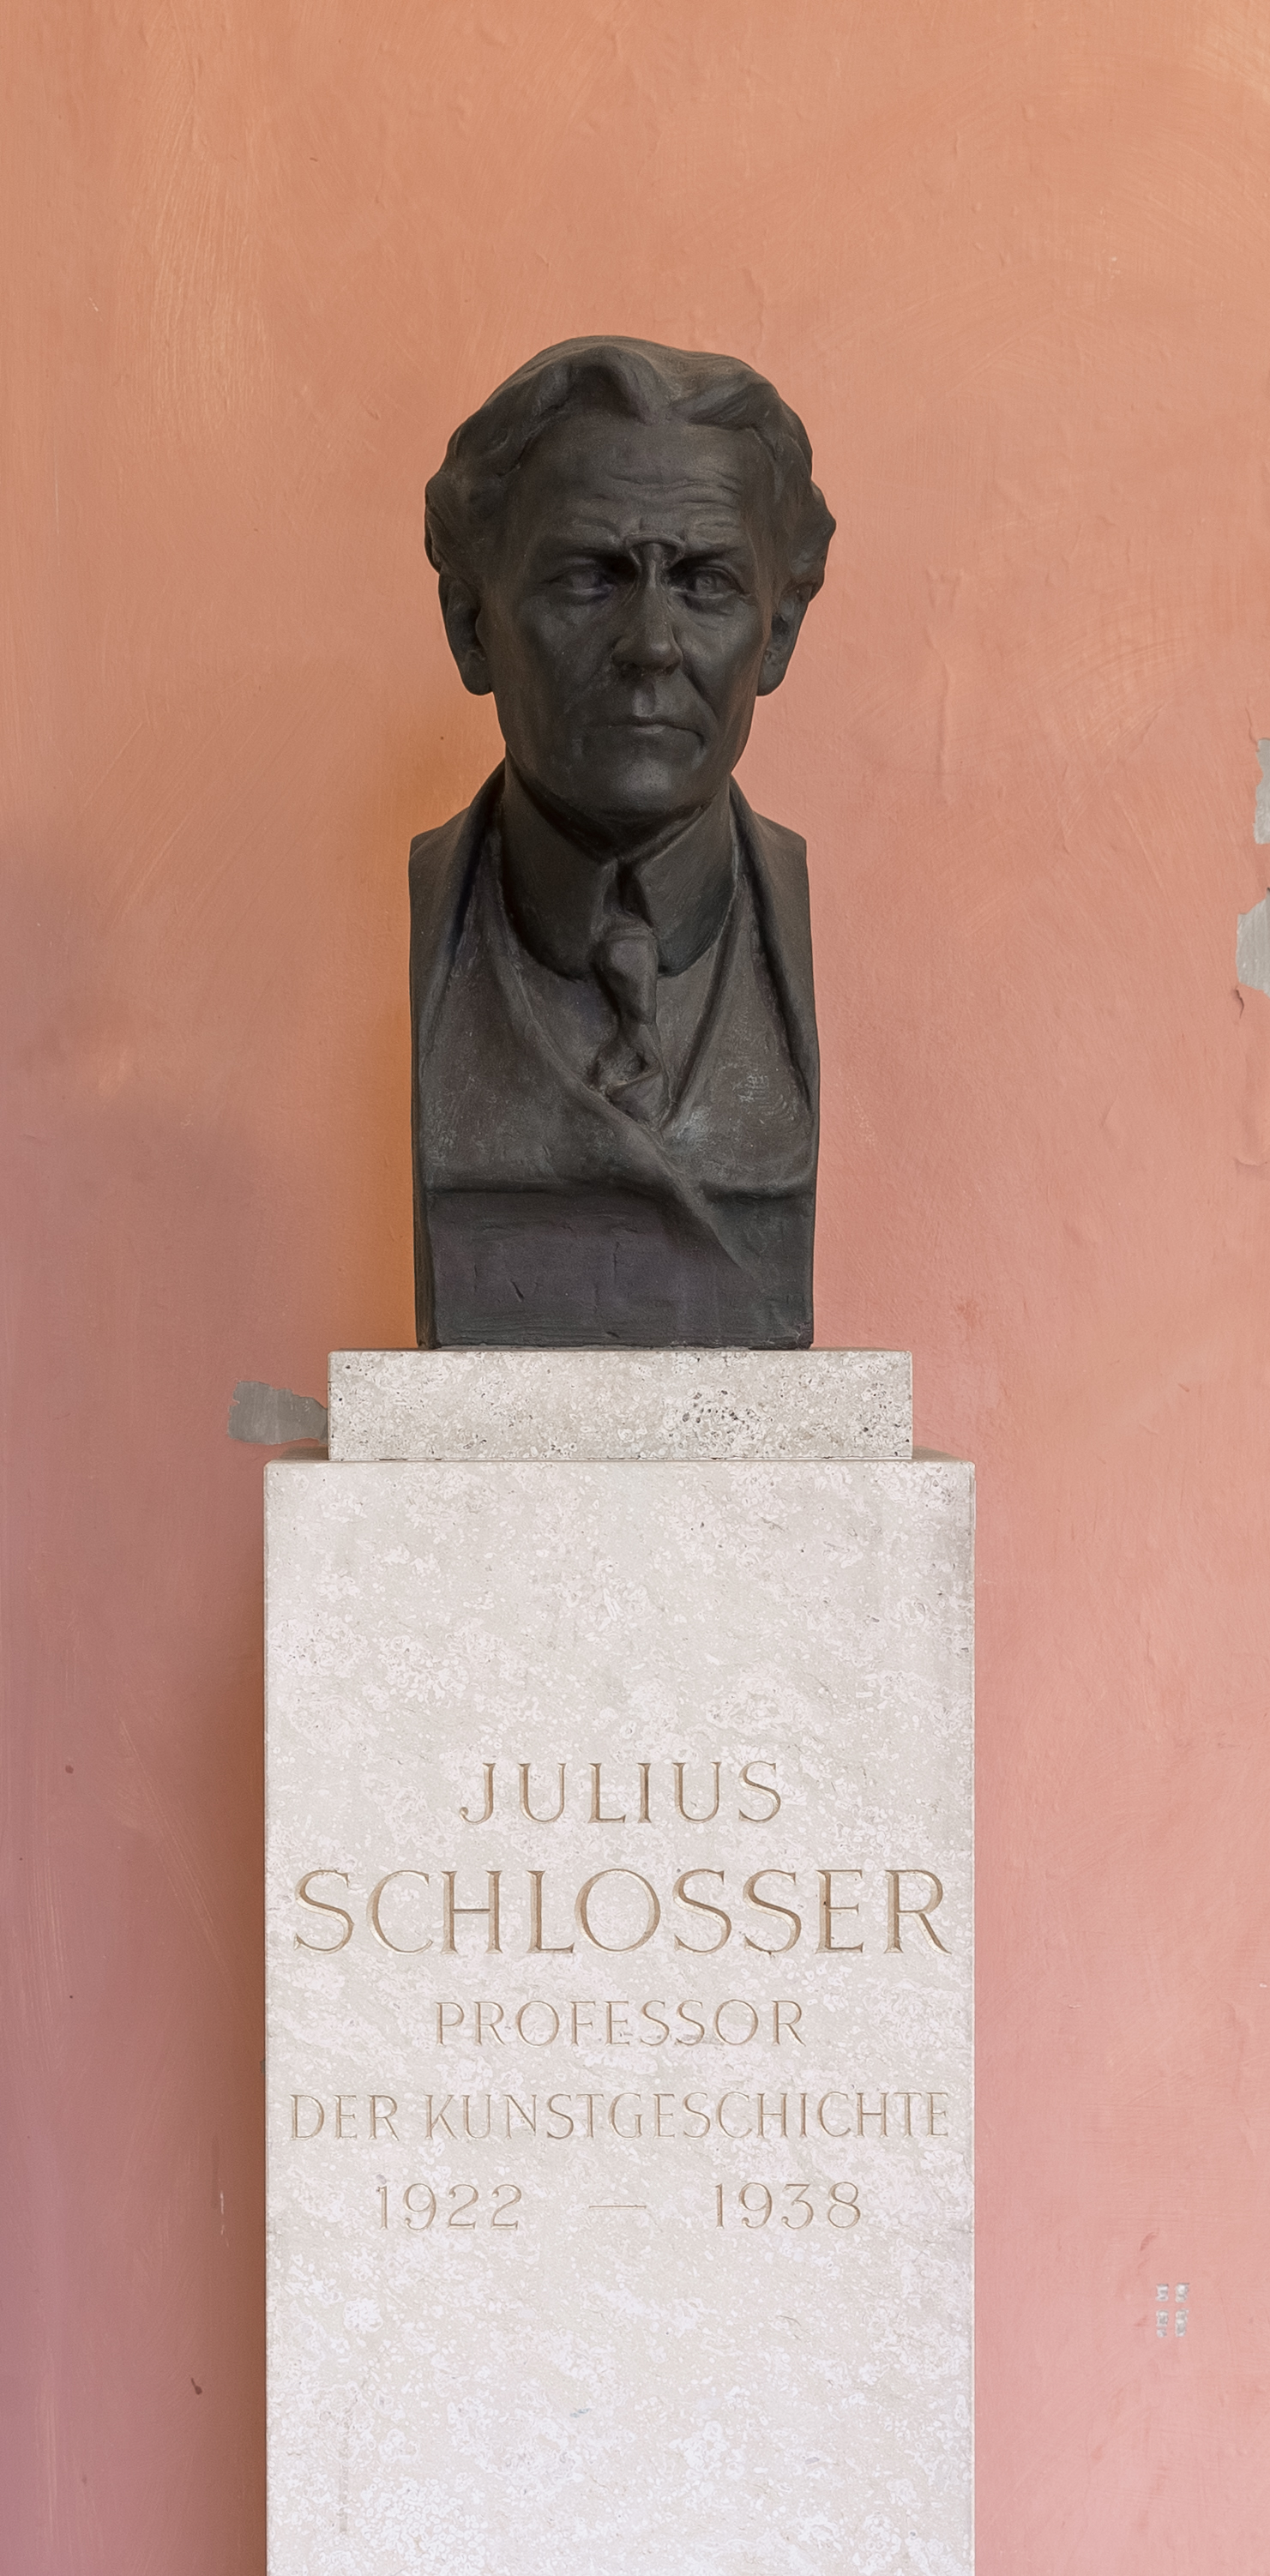 Julius von Schlosser (1866-1938), Mr. 94 bust (bronce) in the Arkadenhof of the University of Vienna 2029-HDR